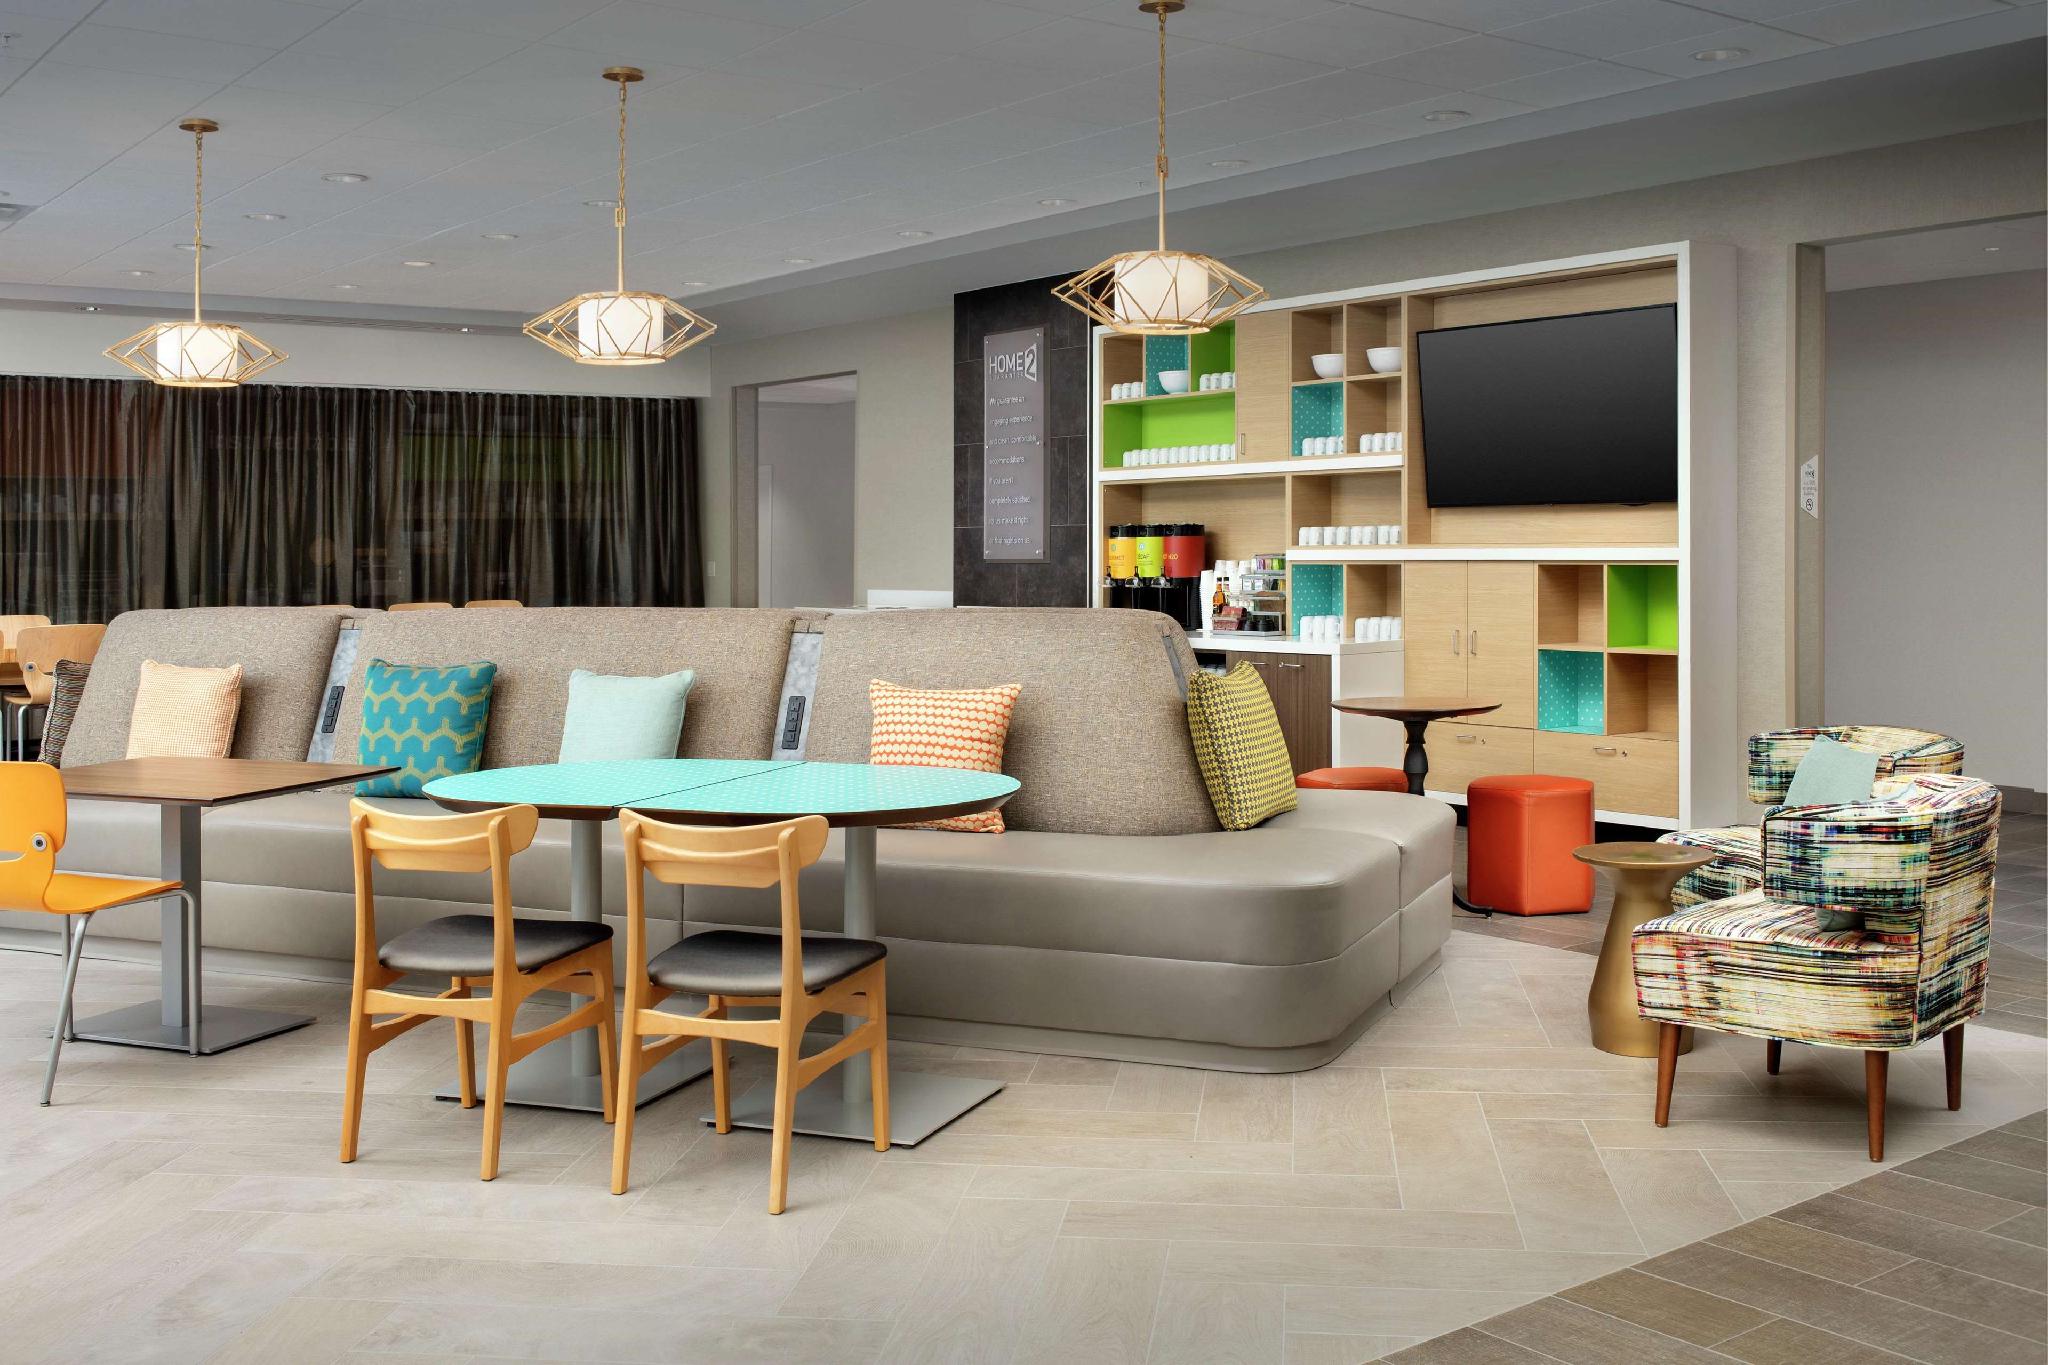 Home2 Suites by Hilton San Antonio Lackland/Sea World, TX